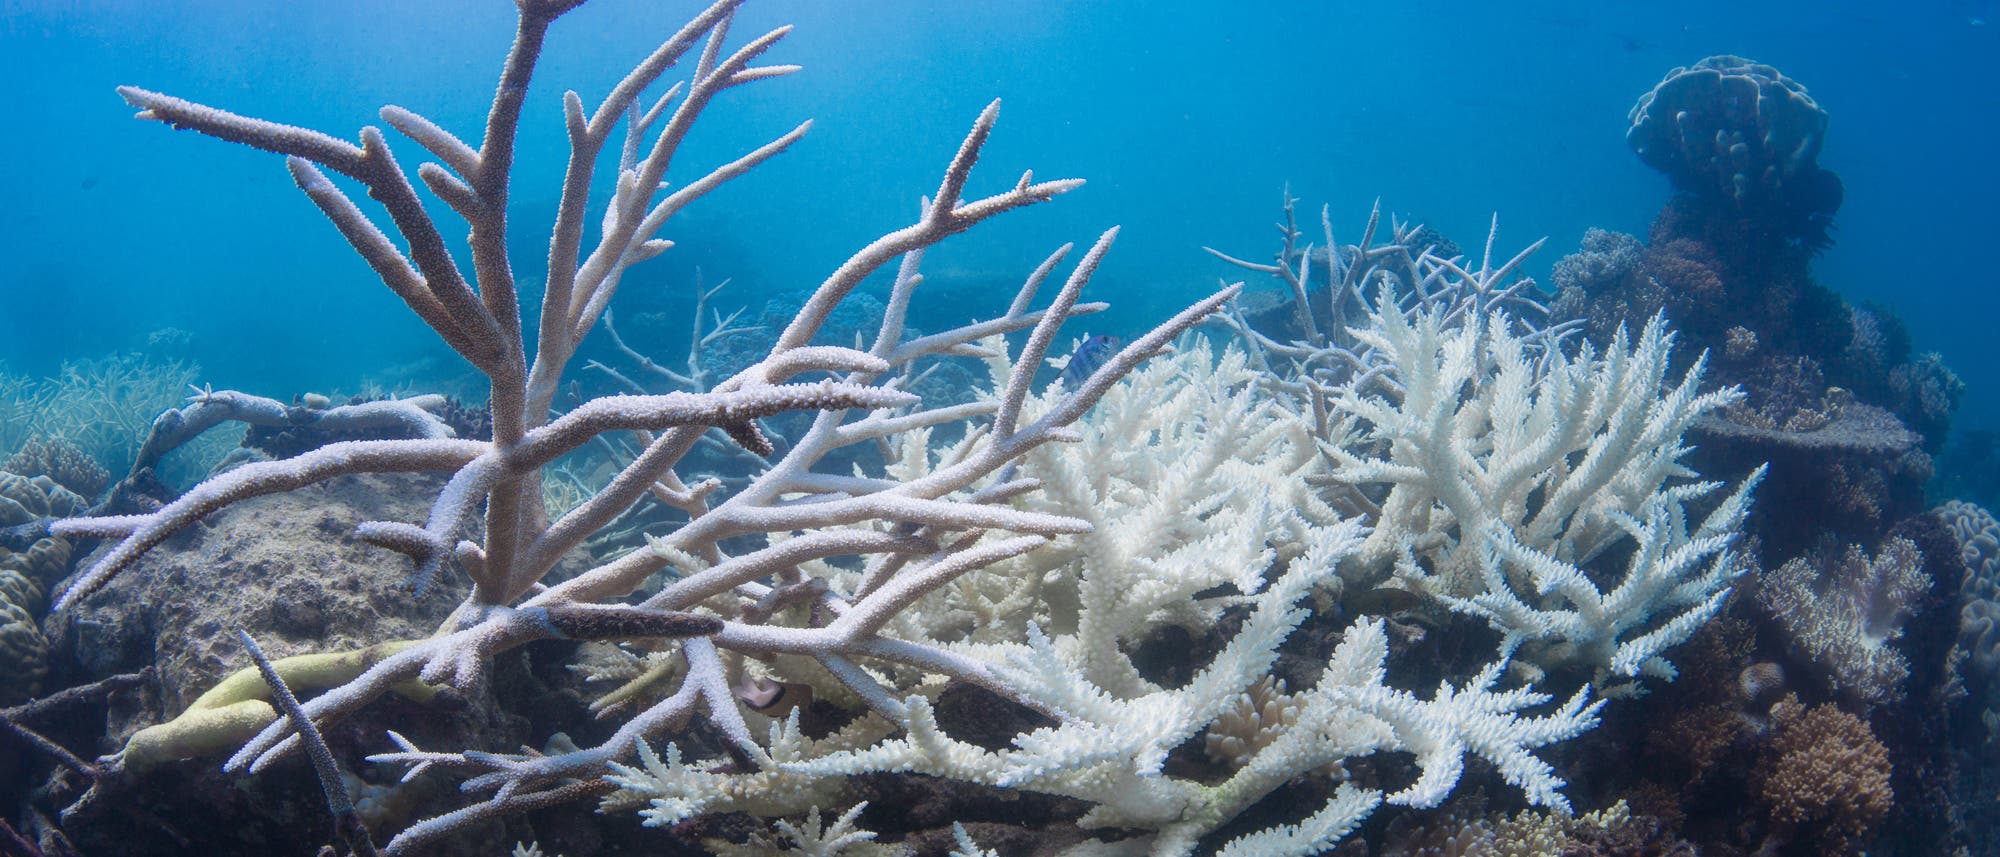 Ausgebleichte Korallen am Great Barrier Reef. Mit Korallen ist es ähnlich wie mit antiken Statuen: in brilliantem Weiß mögen sie zwar auf den ersten Blick ganz hübsch aussehen - aber tatsächlich ist es ein Zeichen des Verfalls.